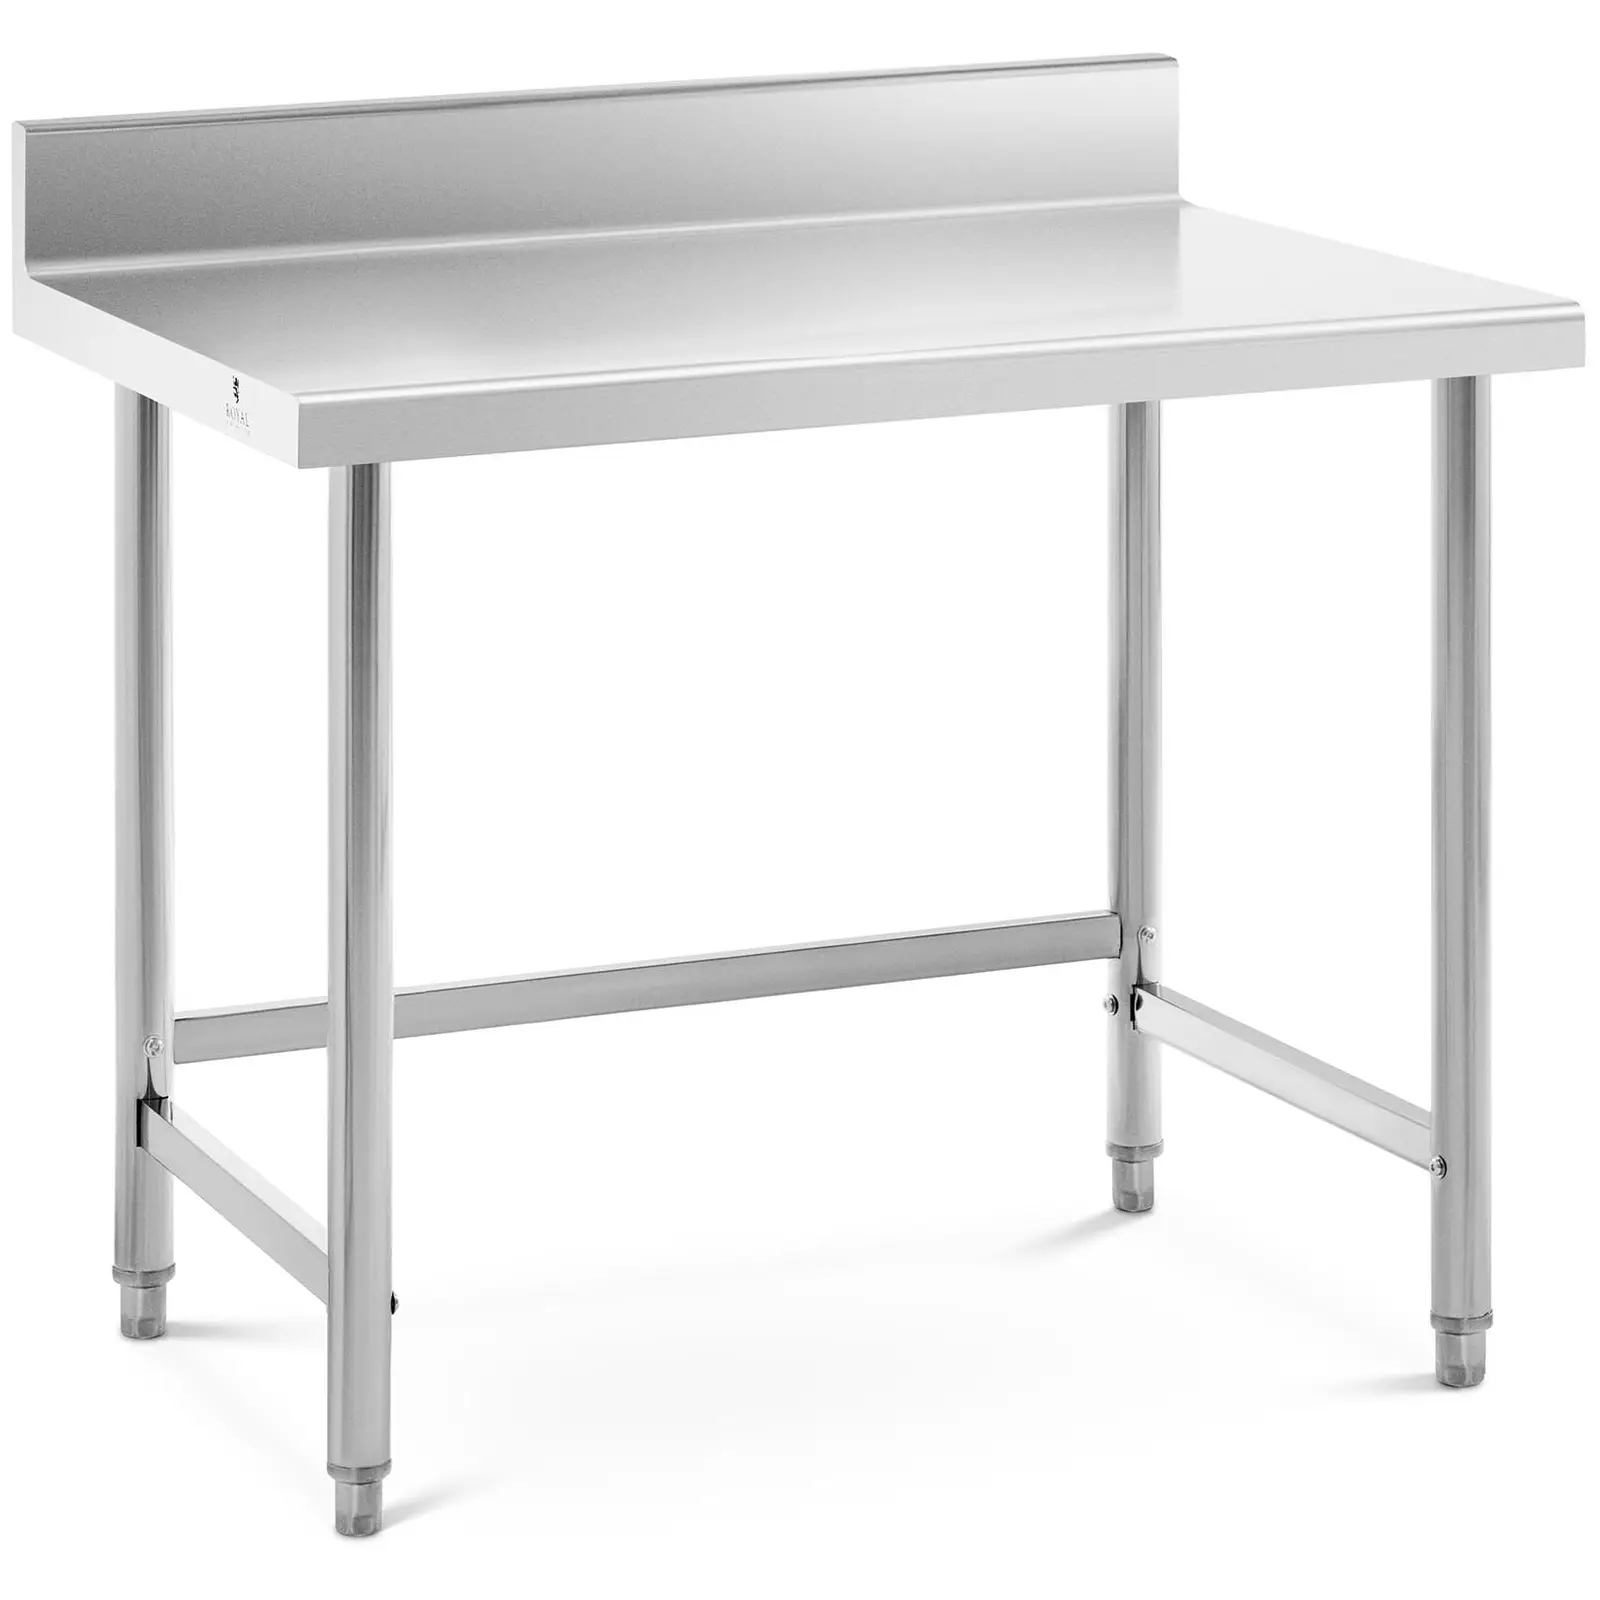 Pracovní stůl z ušlechtilé oceli 100 x 70 cm lem nosnost 92 kg - Pracovní stoly Royal Catering